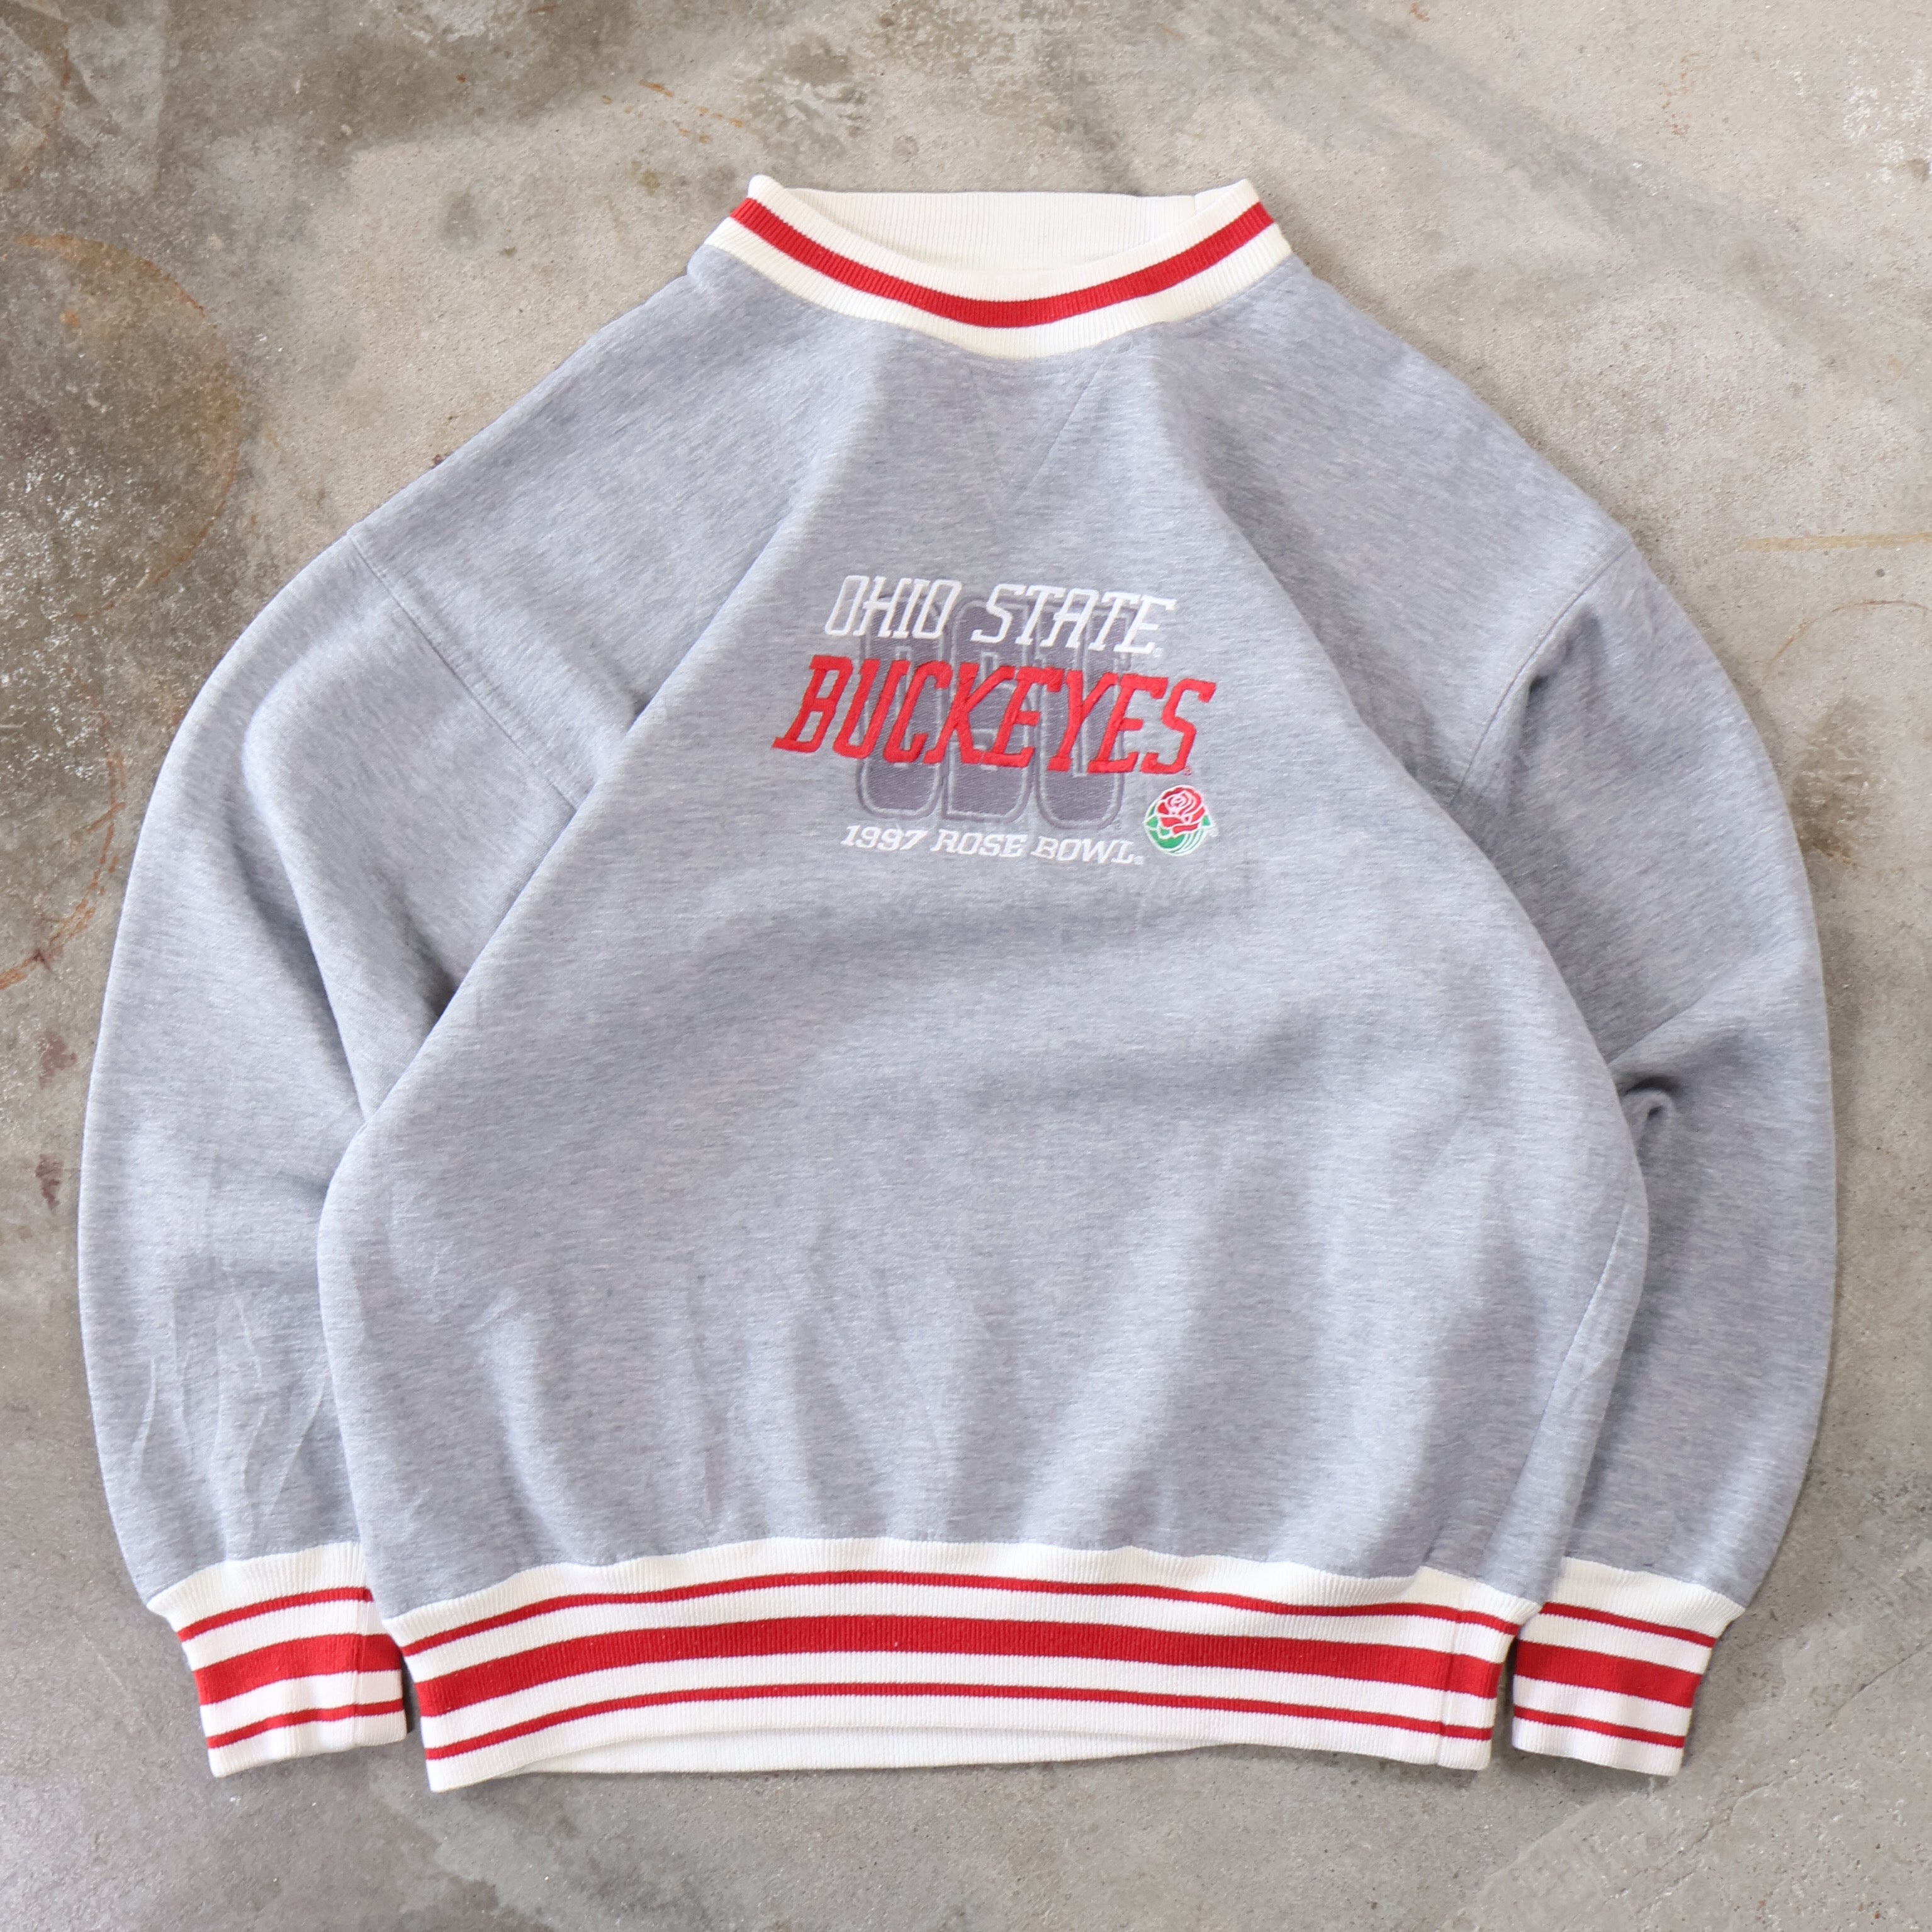 Ohio State Buckeye Rose Bowl 1997 Sweatshirt (Medium)